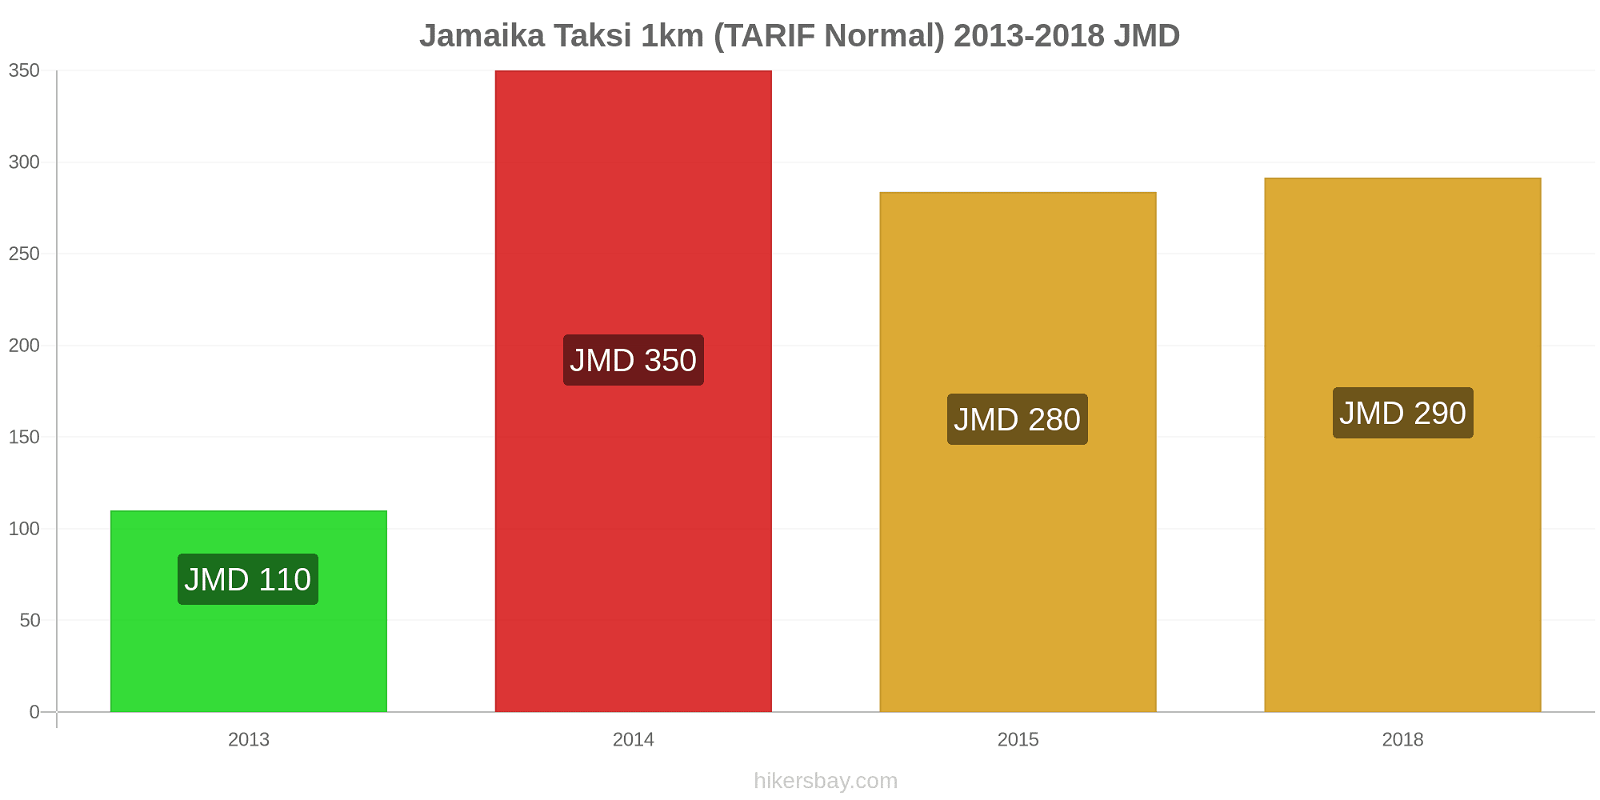 Jamaika perubahan harga Taksi 1km (Tarif Normal) hikersbay.com